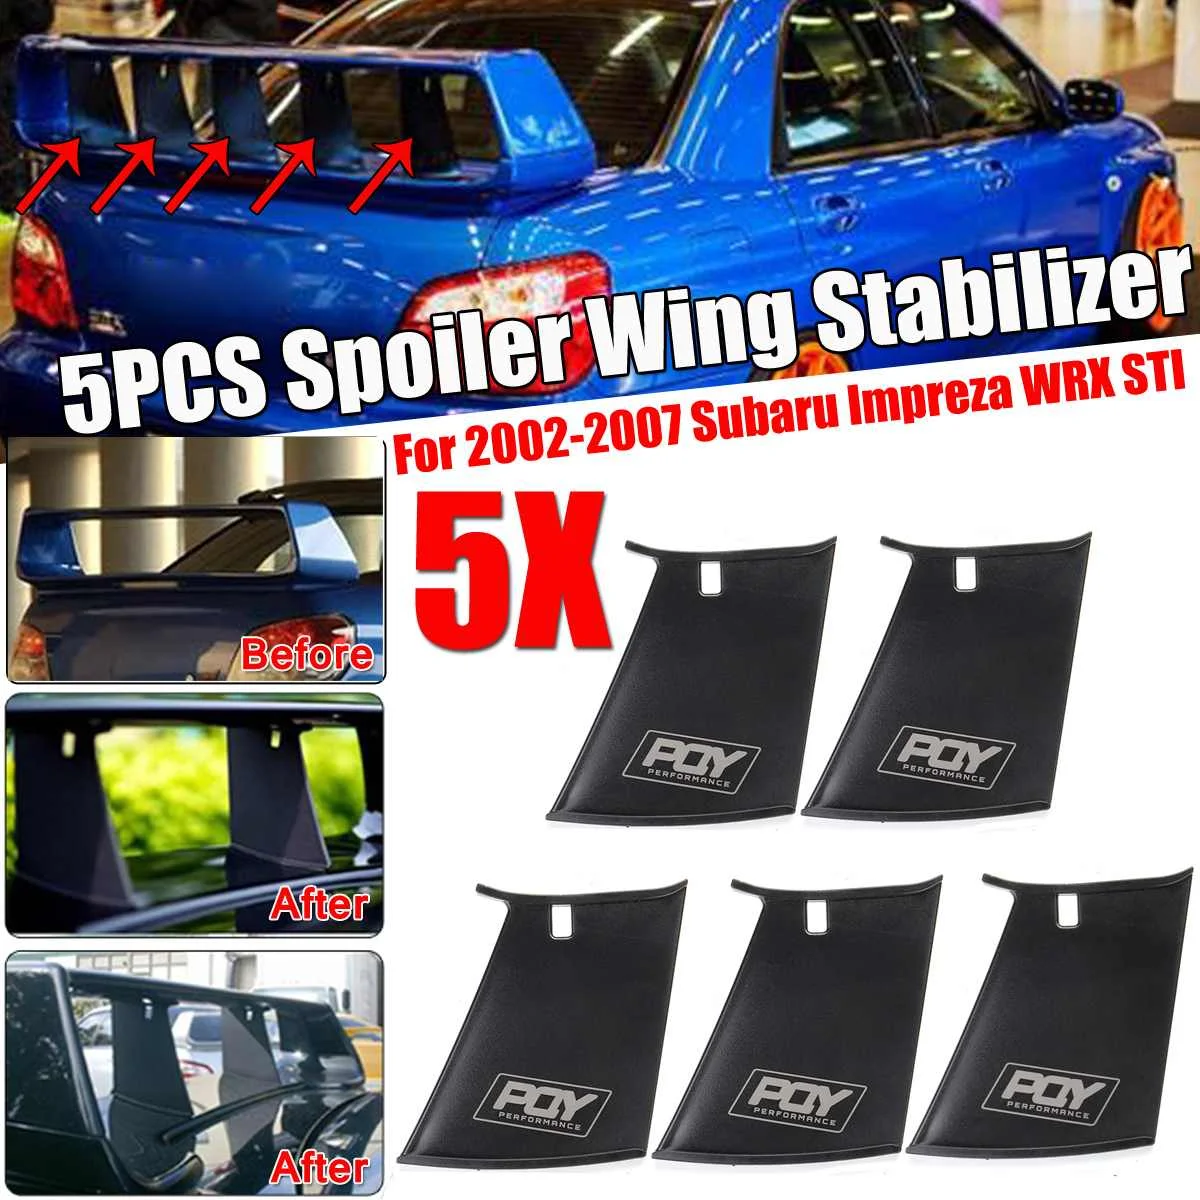 New Car Rear Spoiler Wing Stabilizer Bumper Stand For Subaru Impreza 2002-2007 WRX STi Stiffi Wing Spoiler Support Stabilizer